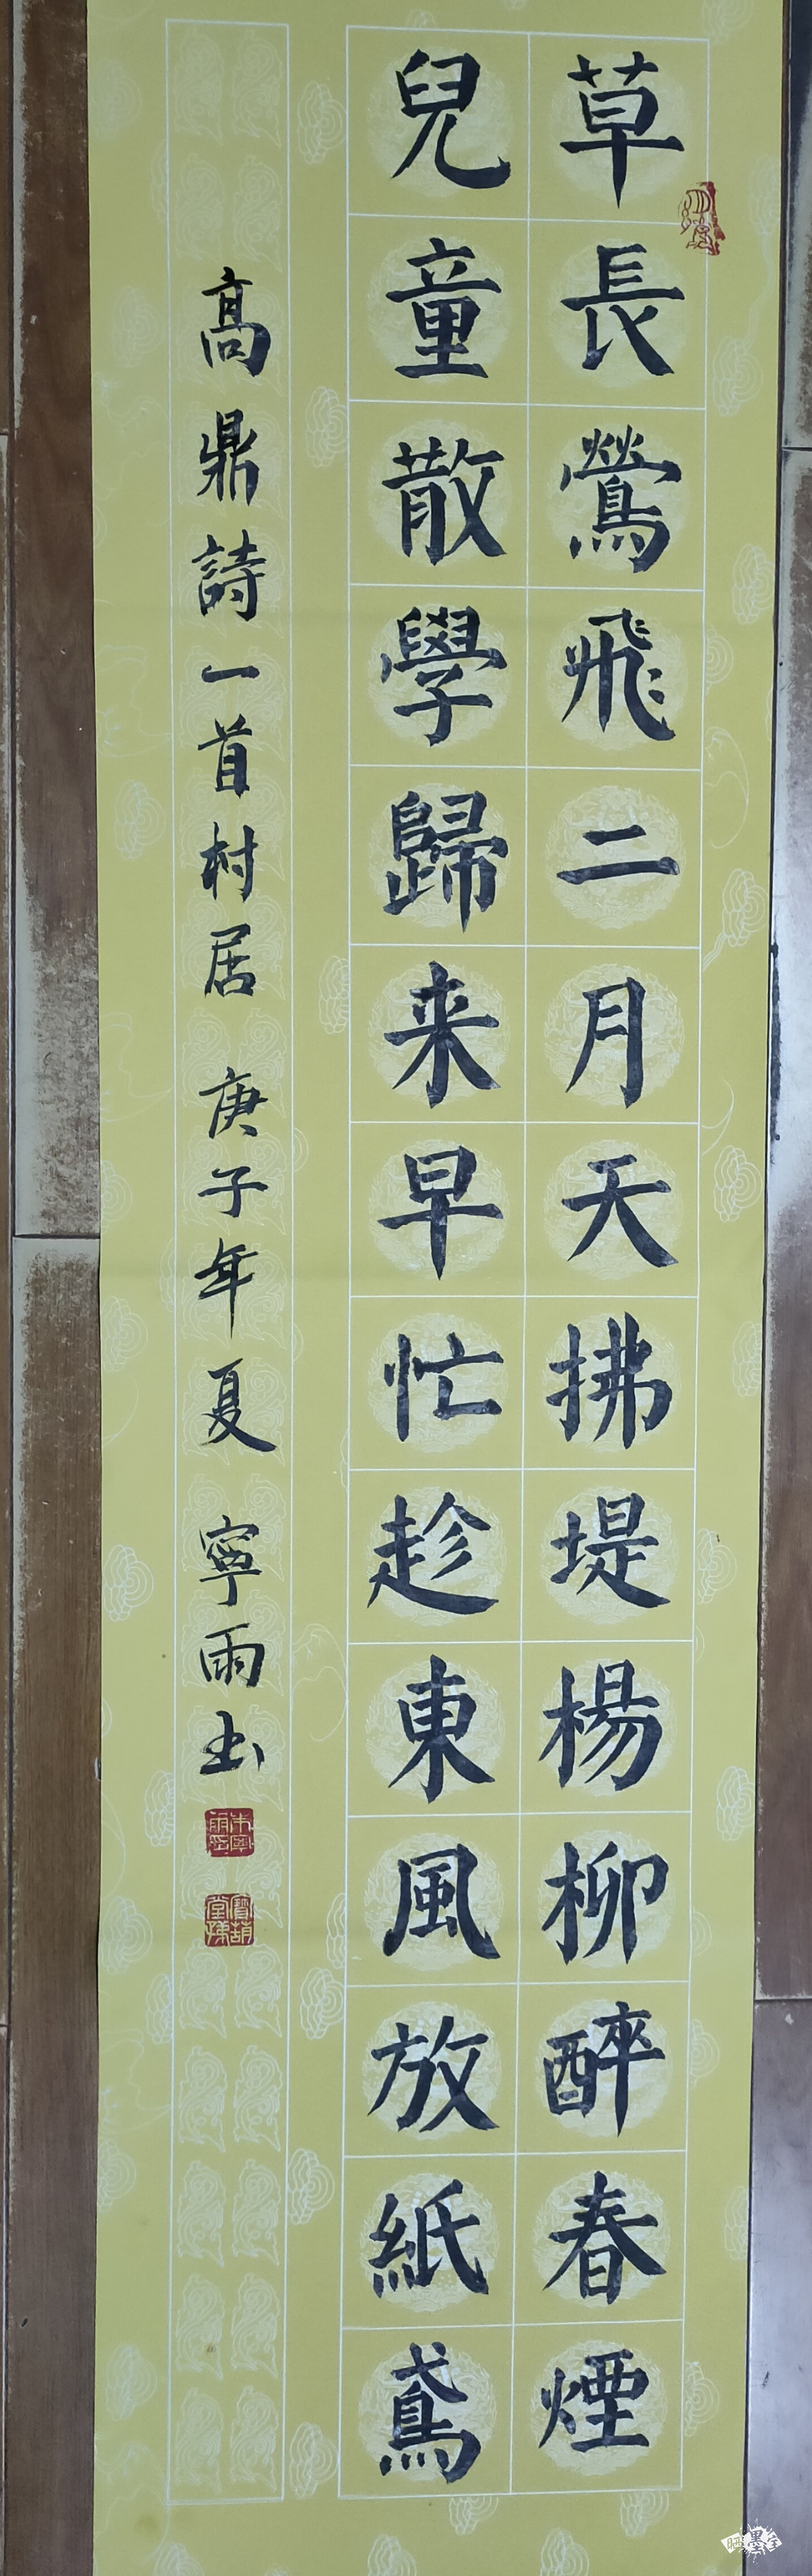 村居繁体字书法图片